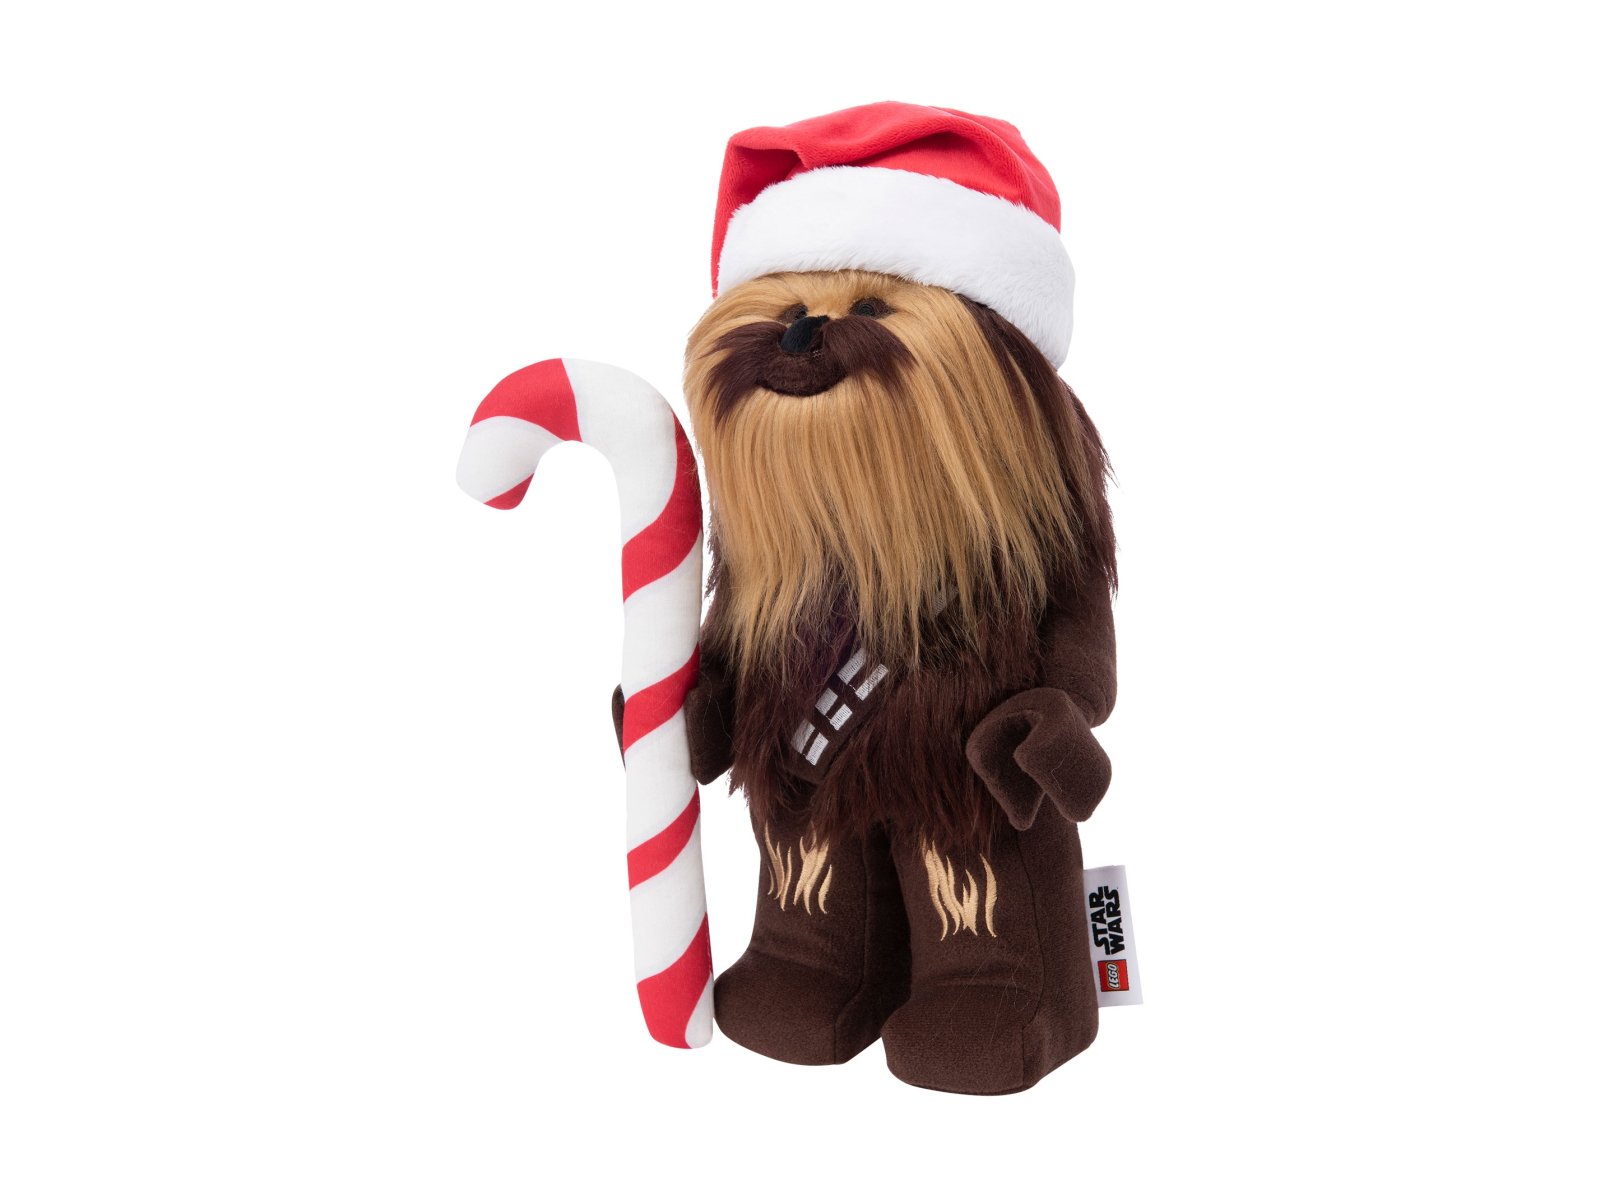 LEGO Star Wars 5007464 Świąteczny pluszowy Chewbacca™